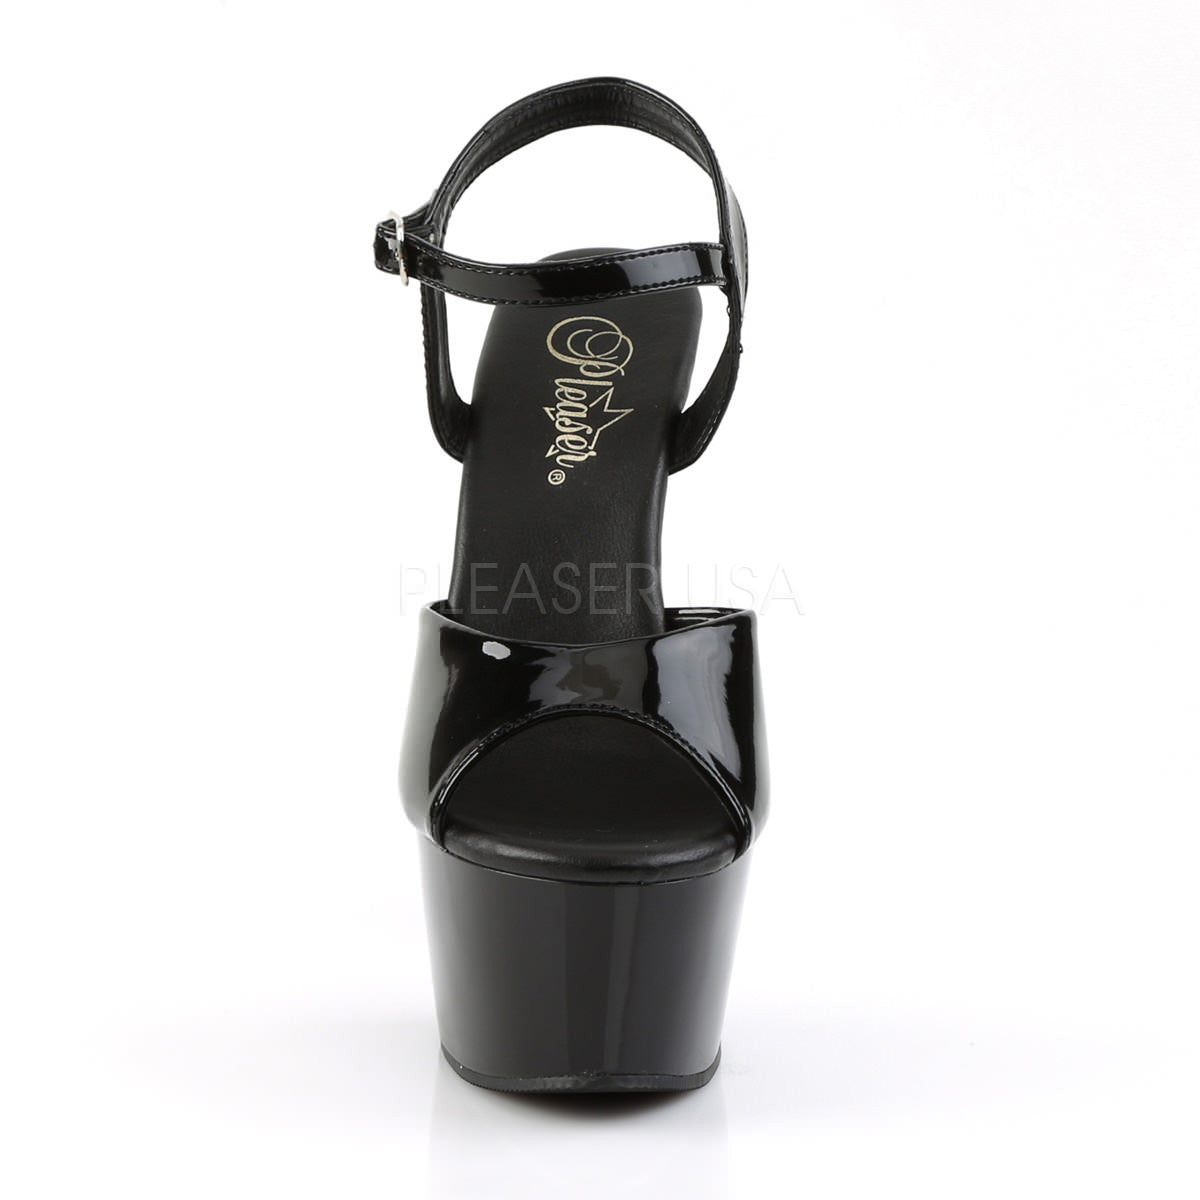 Pleaser ASPIRE-609 Black Ankle Strap Sandals With Black Platform - Shoecup.com - 2